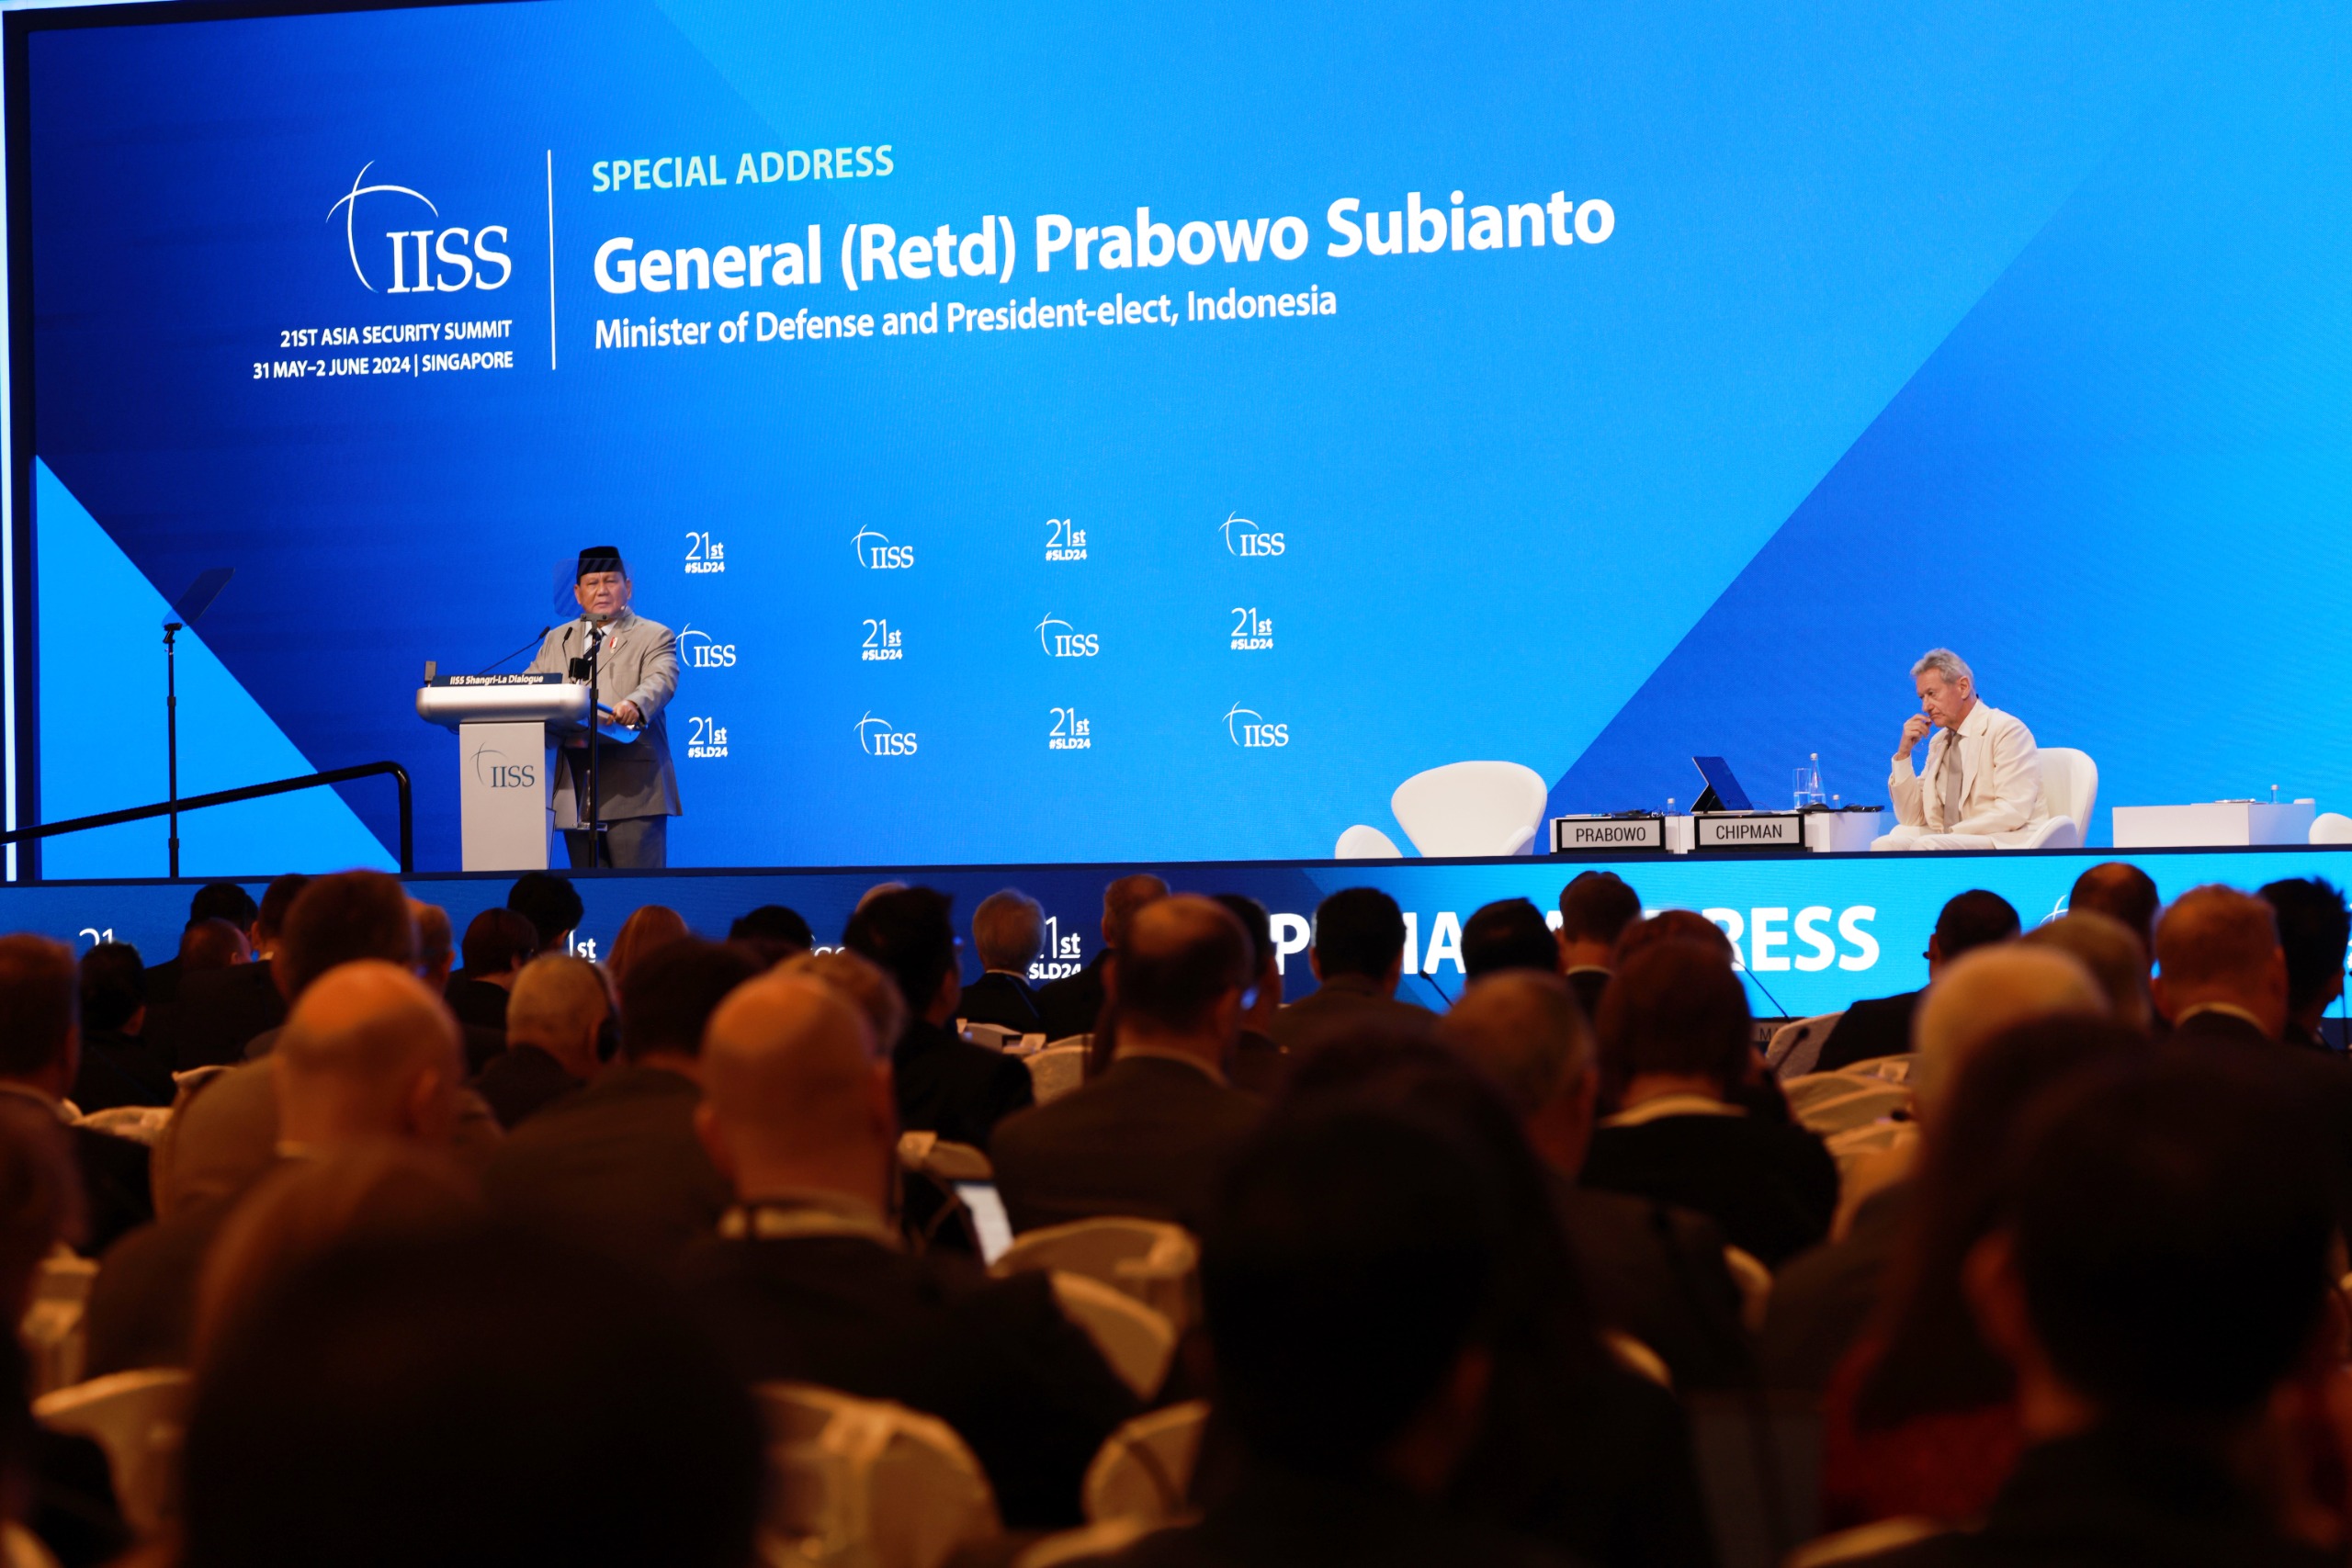 Presiden Terpilih Indonesia Prabowo Subianto saat menjadi pembicara di acara IISS Shangri-La Dialogue ke-21 yang digelar di Singapura, Sabtu (1/6).